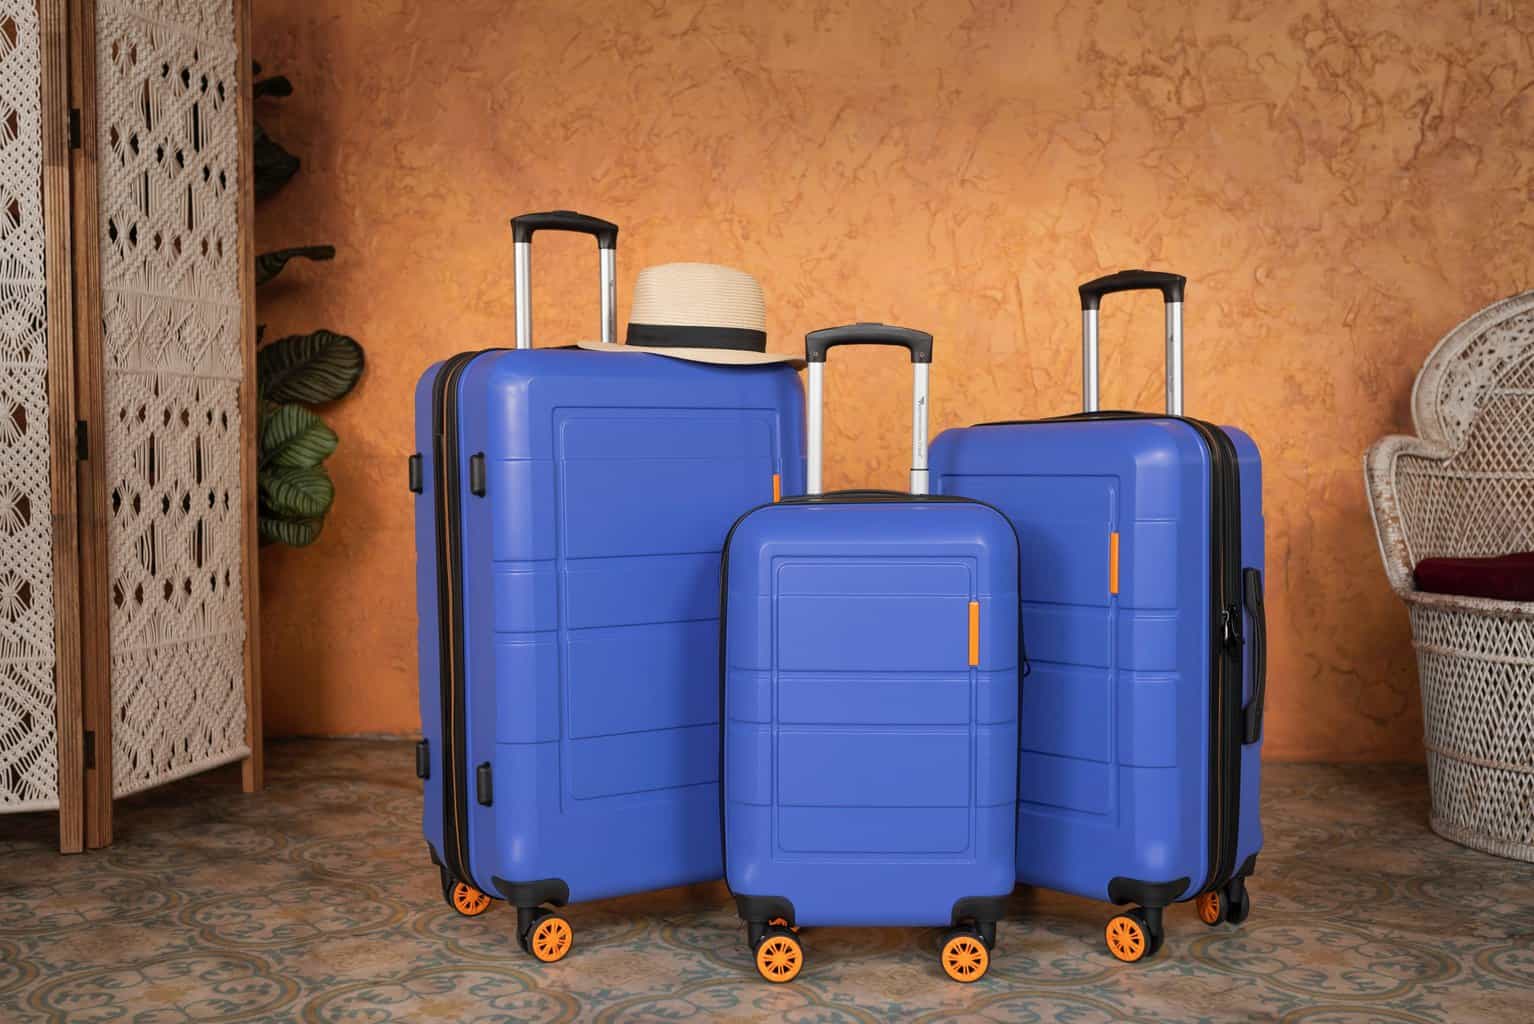  Teskyer Luggage Tags, 3 Pack Premium PU Leather